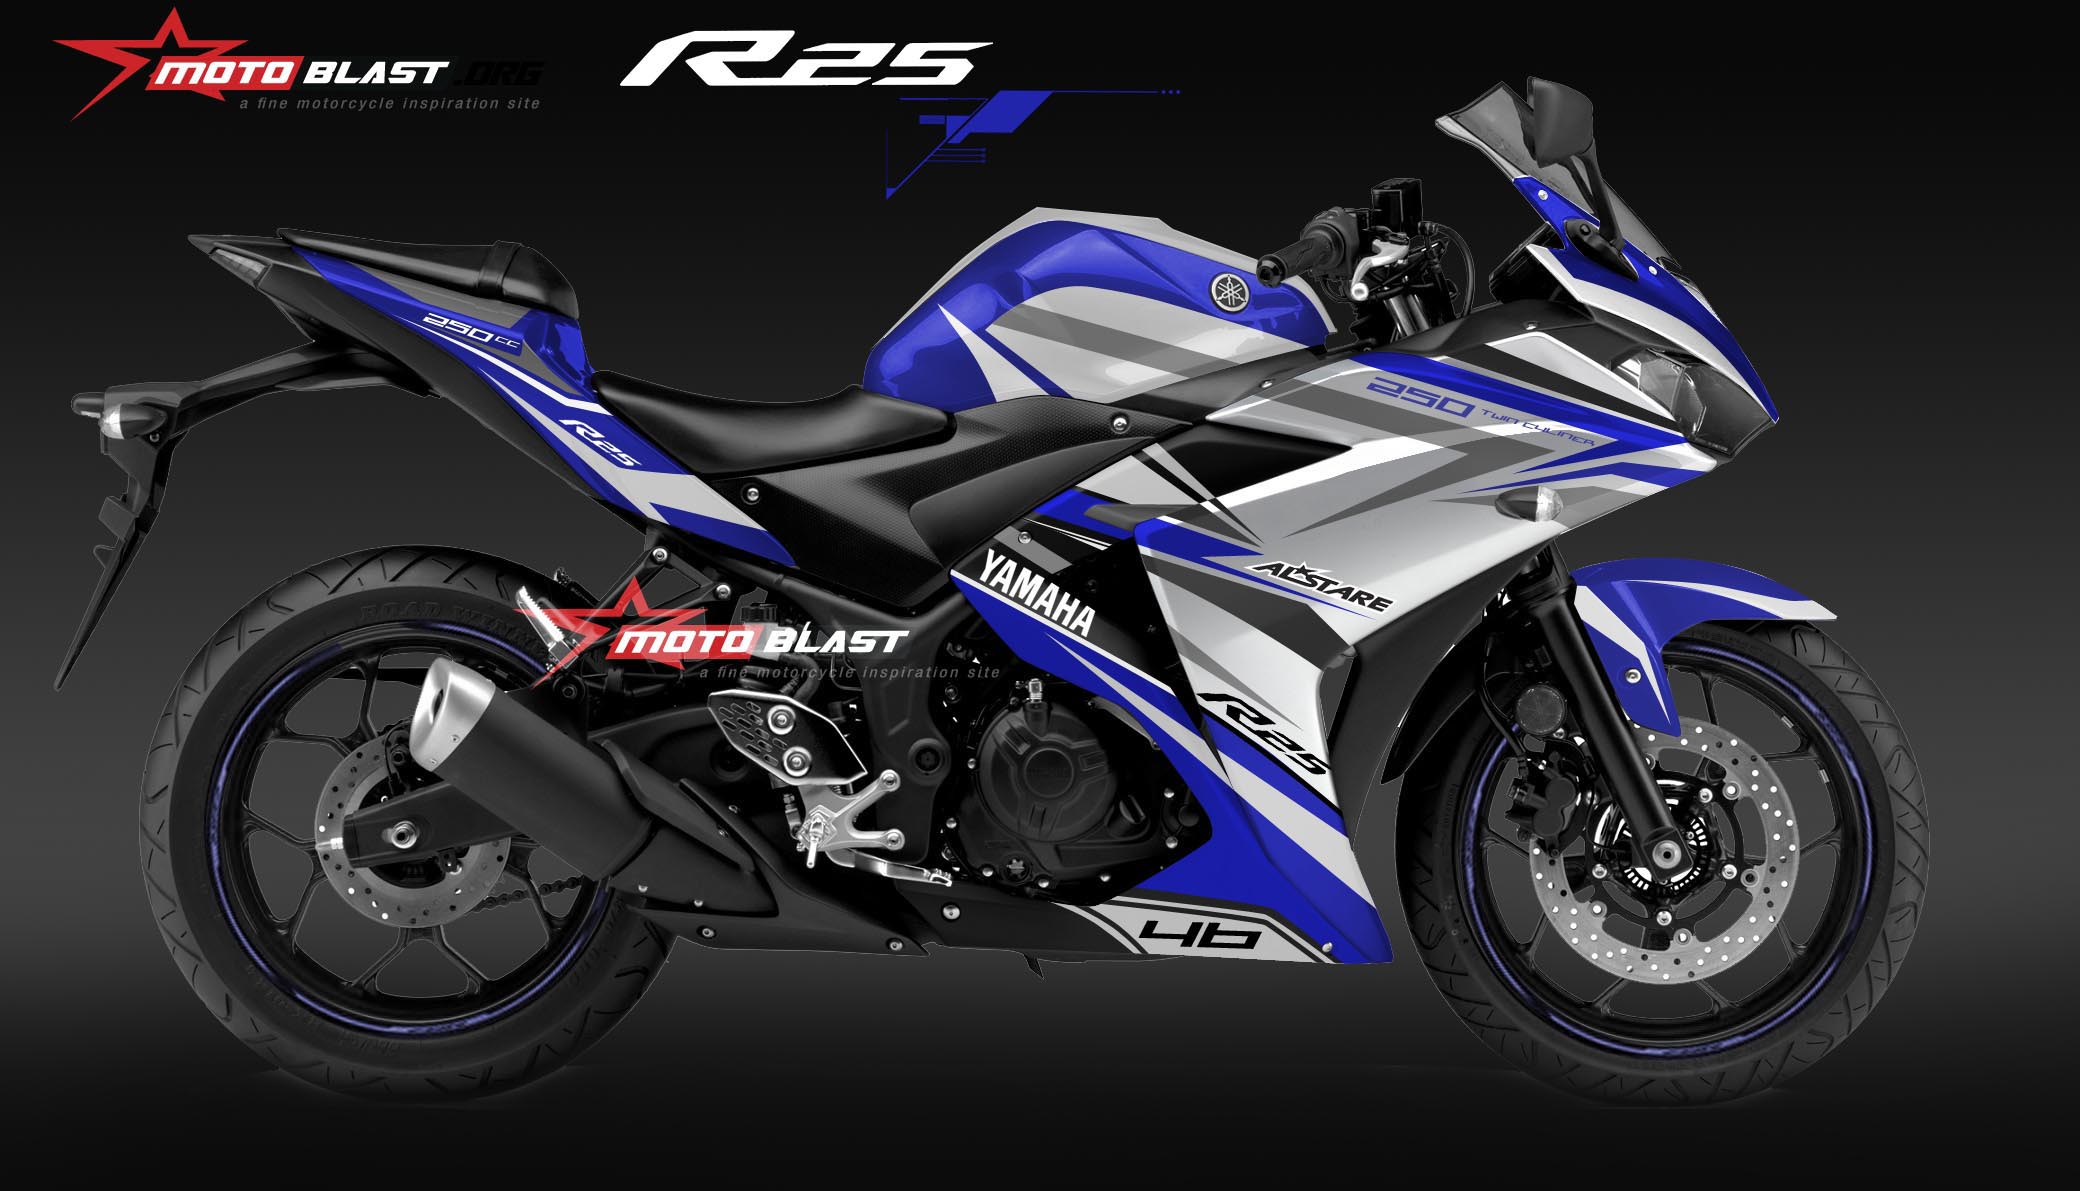 Motoblast Modifikasi Striping Yamaha R25 Blue Alstare